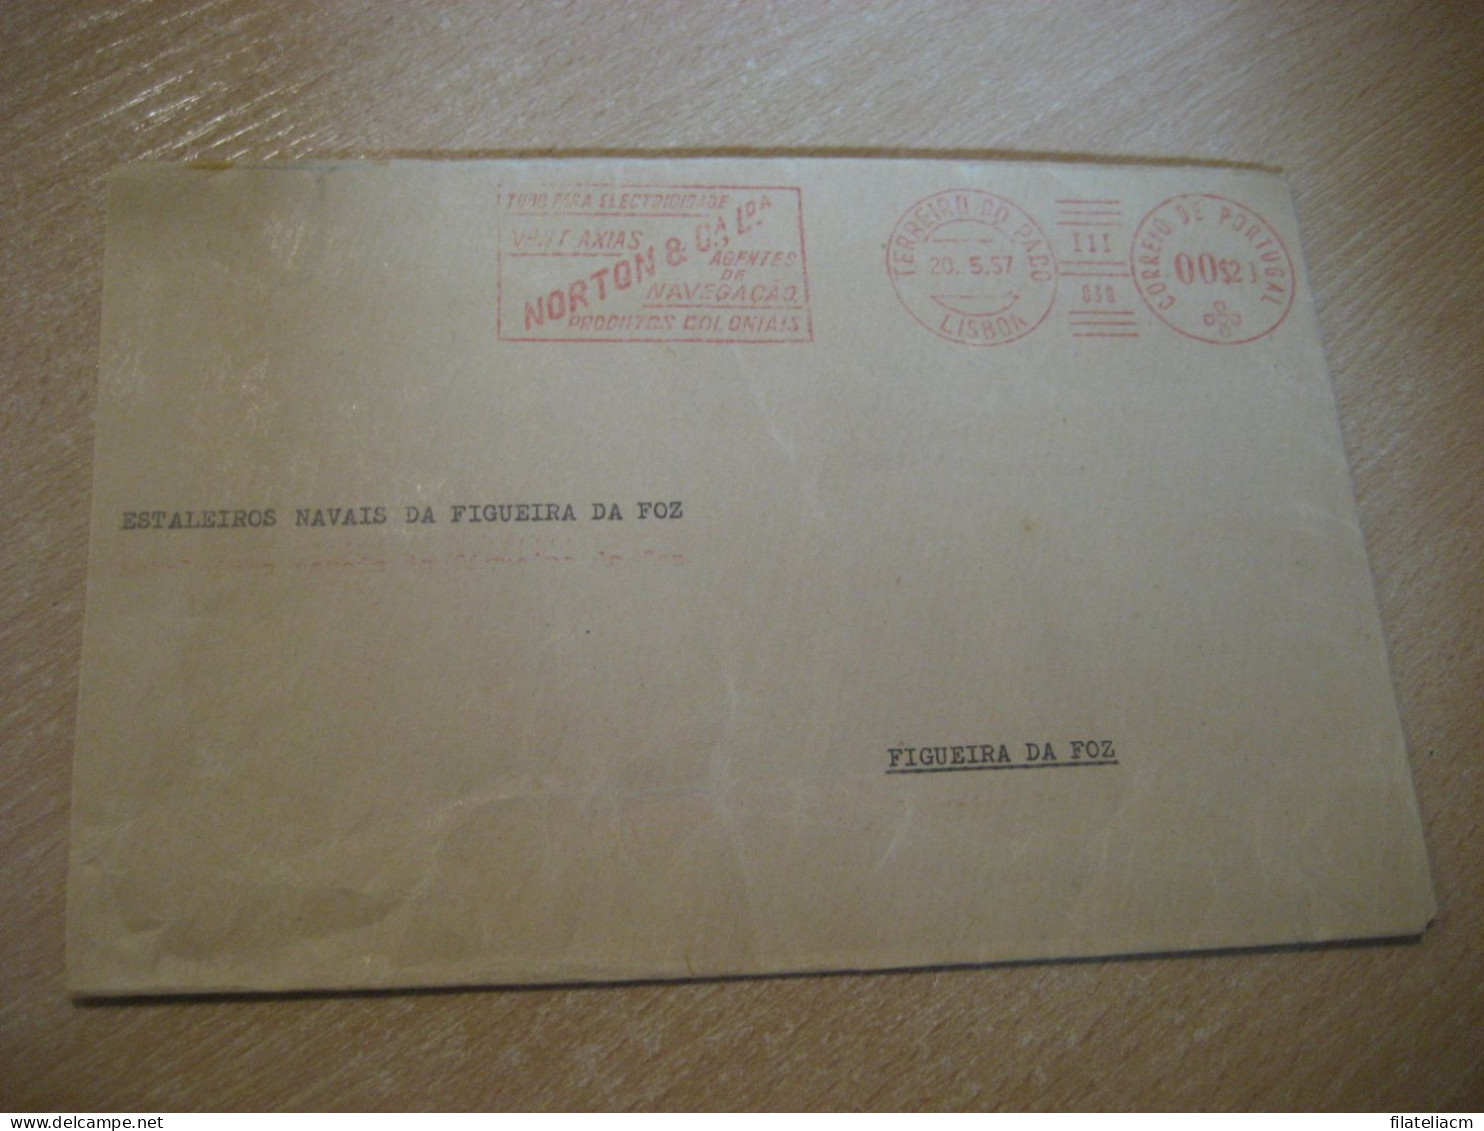 LISBOA 1957 To Figueira Da Foz Norton Agentes Navegaçao Produtos Coloniales Meter Mail Cancel Cover PORTUGAL - Briefe U. Dokumente